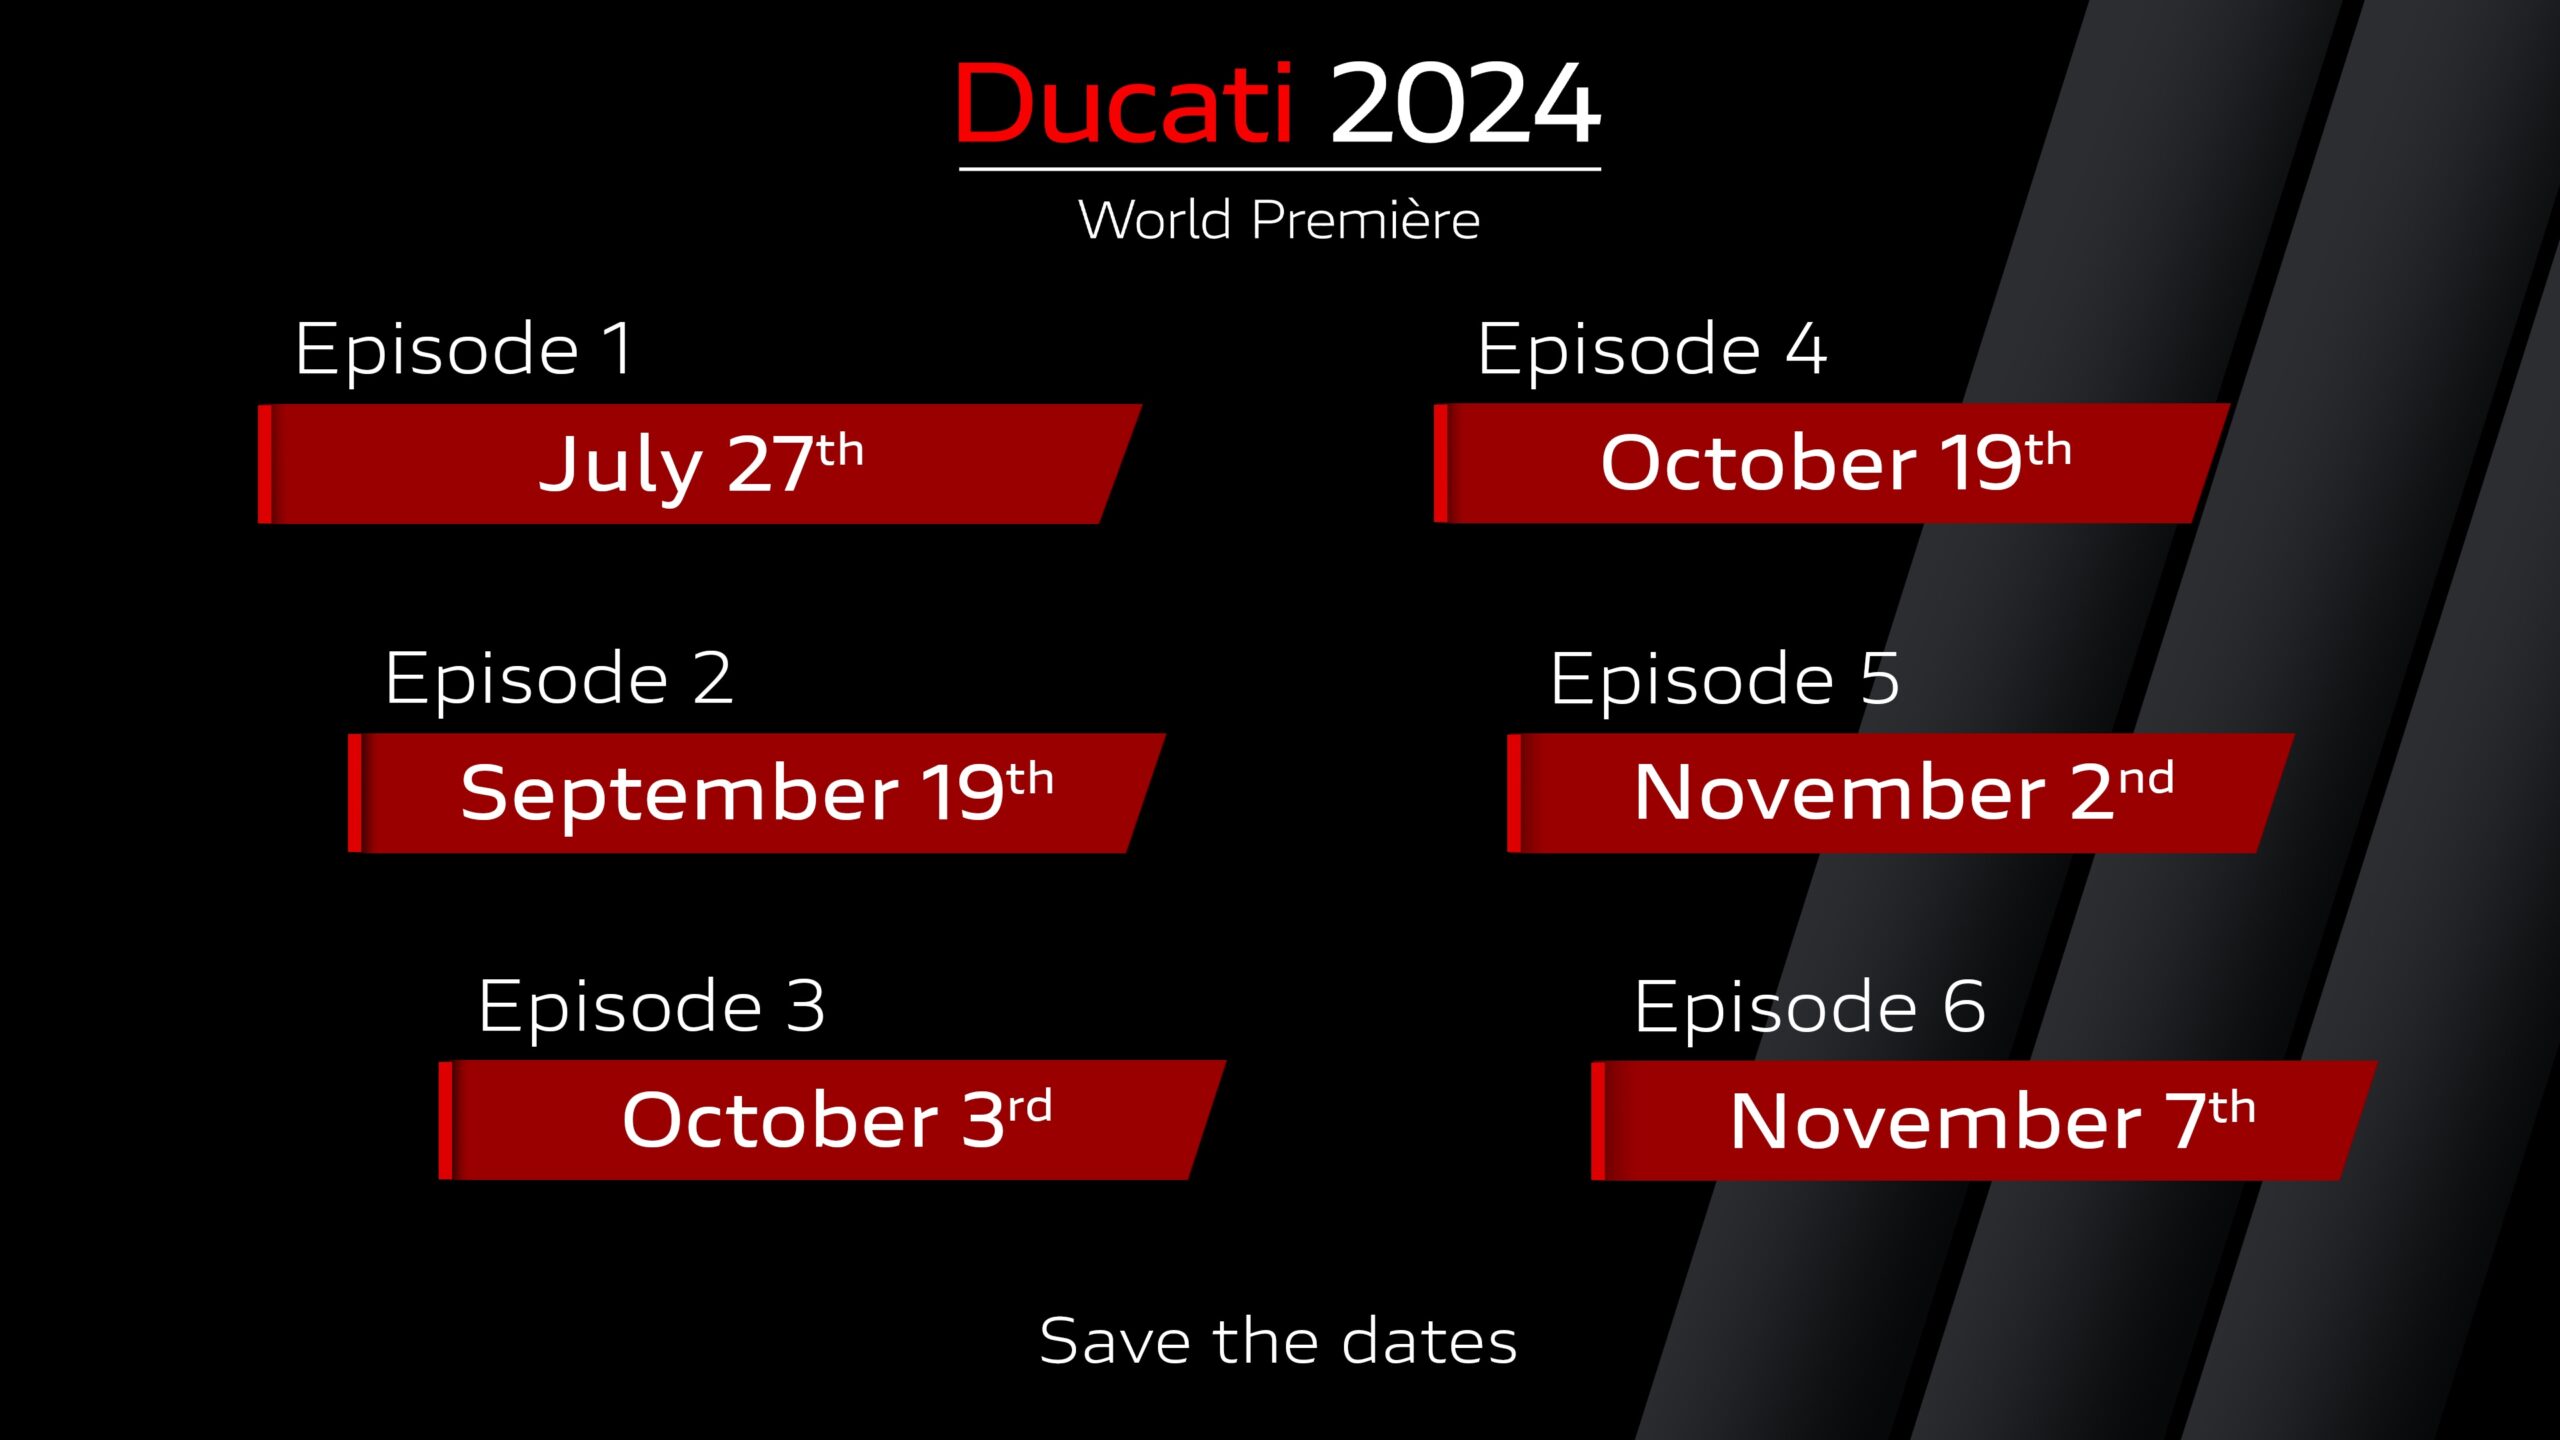 ducati world Premiere 2024 dates